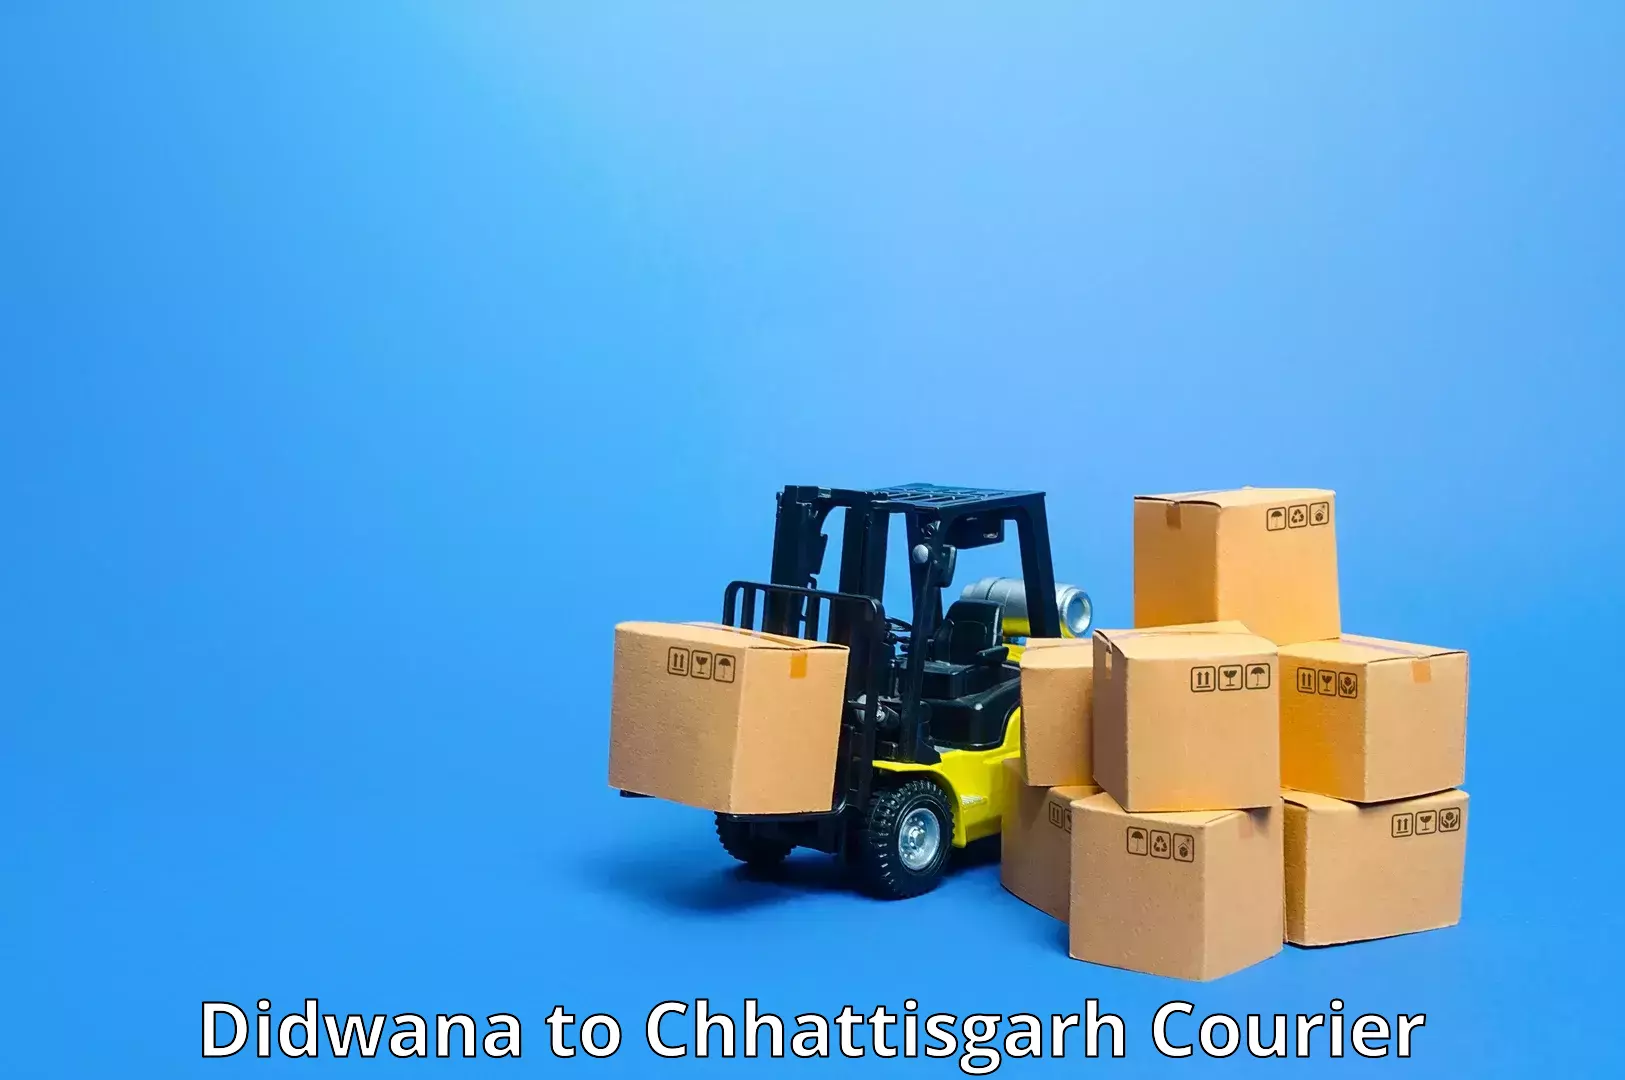 Courier services Didwana to Bijapur Chhattisgarh